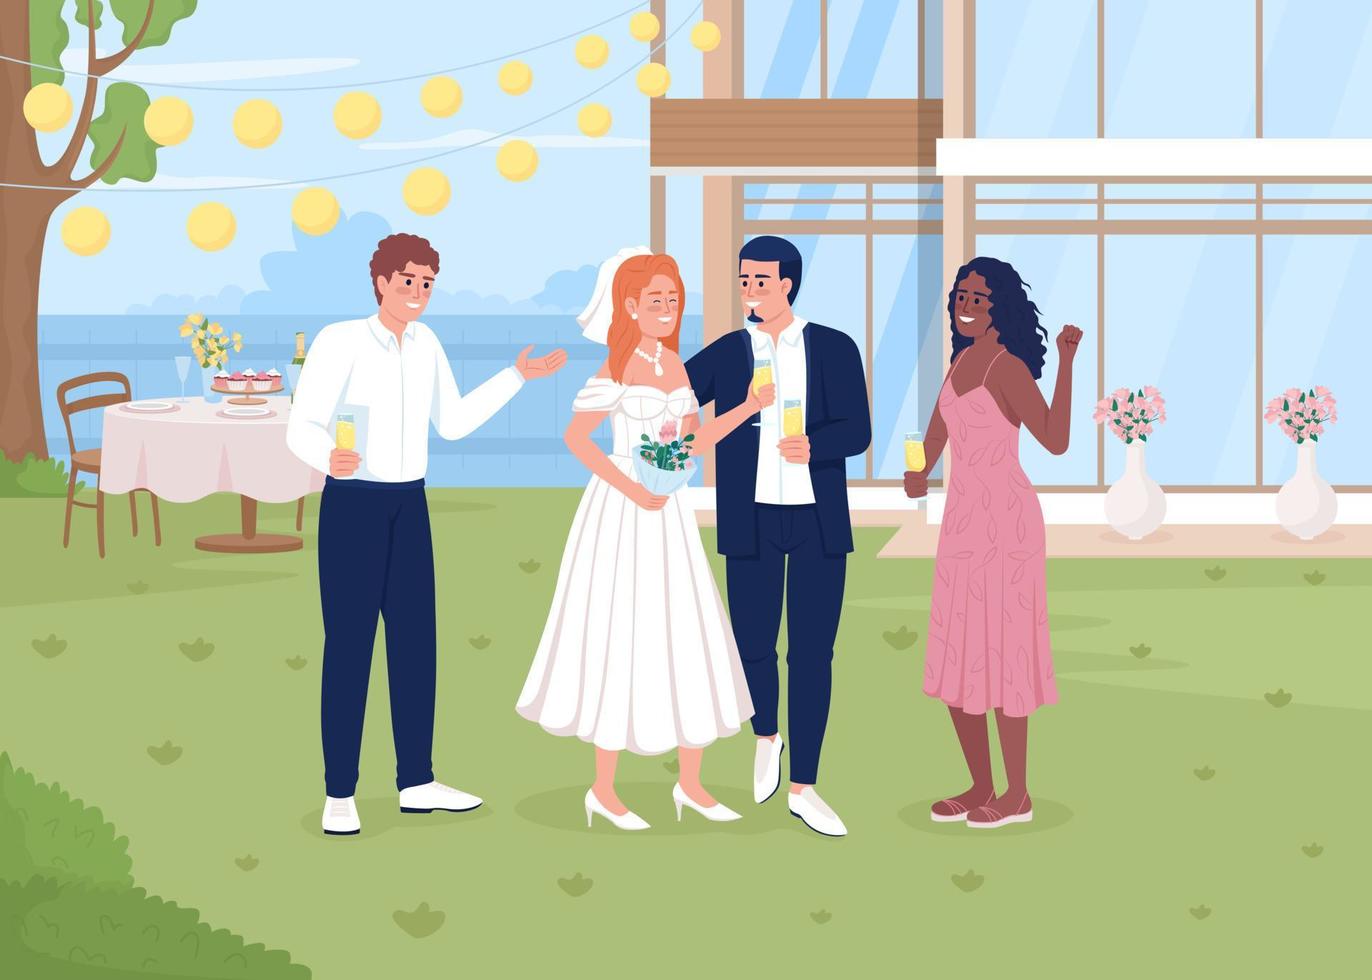 fira bröllop händelse i bakgård platt Färg vektor illustration. Lycklig nygifta med vänner. fullt redigerbar 2d enkel tecknad serie tecken med byggnad och trädgård på bakgrund